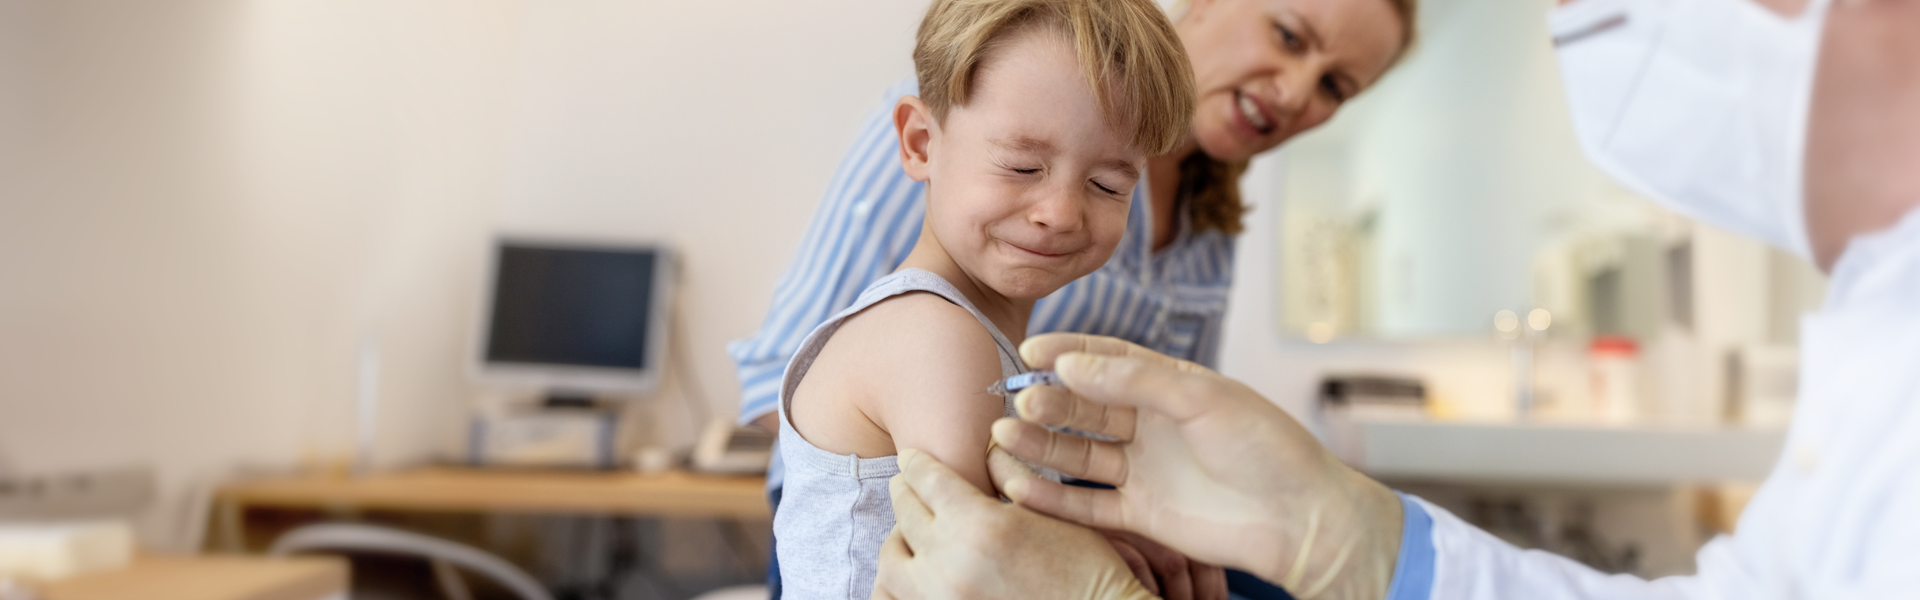 child being immunized